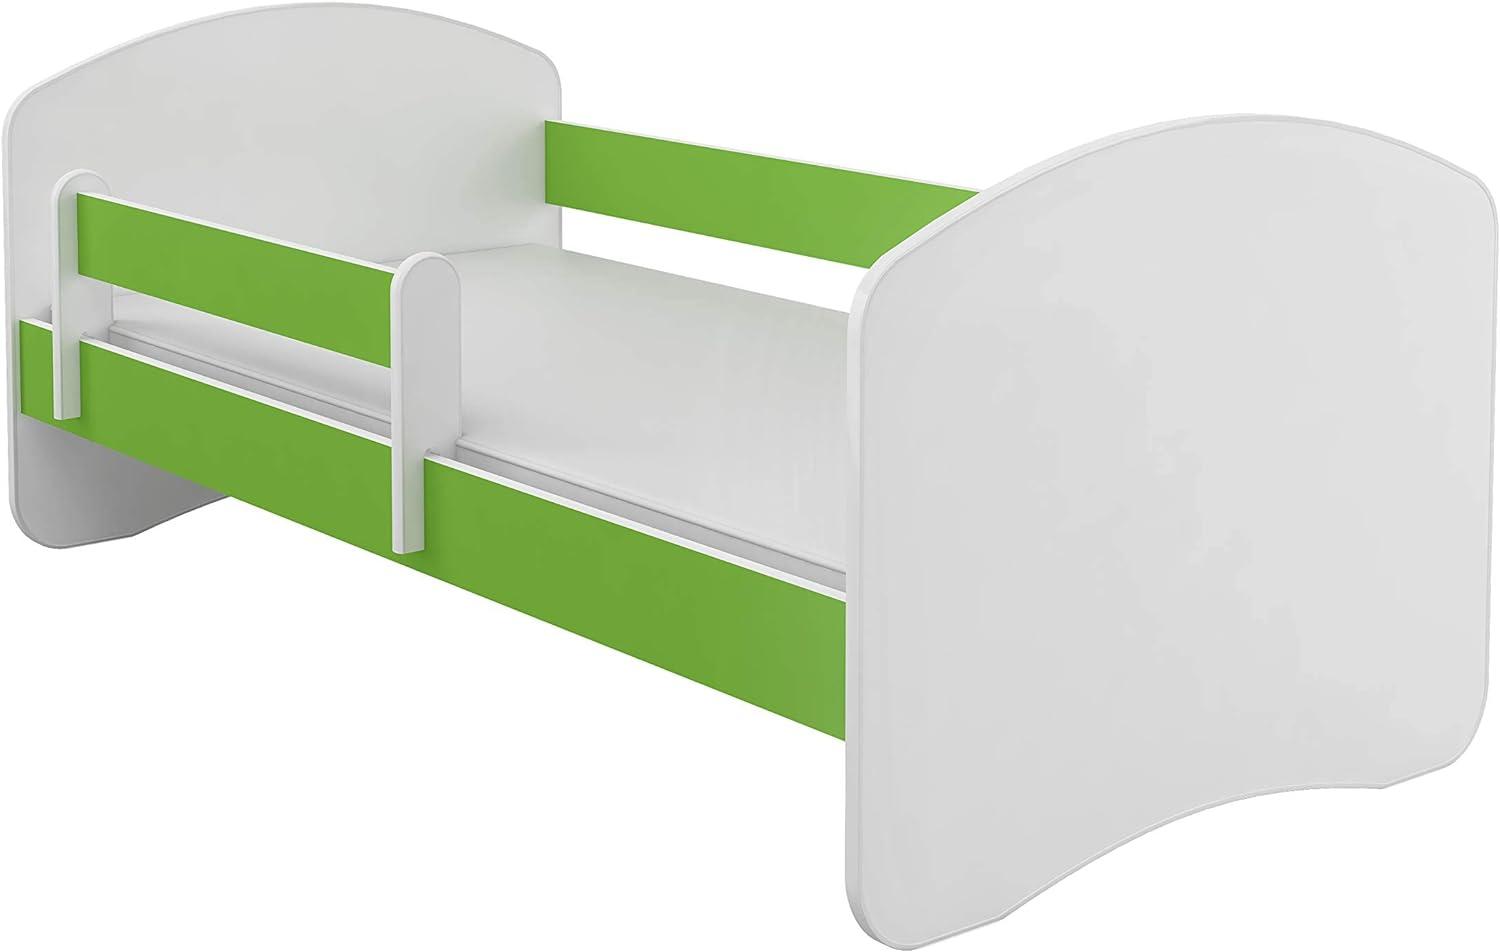 Kinderbett Jugendbett mit einer Schublade und Matratze Weiß ACMA II (140x70 cm, Grün) Bild 1